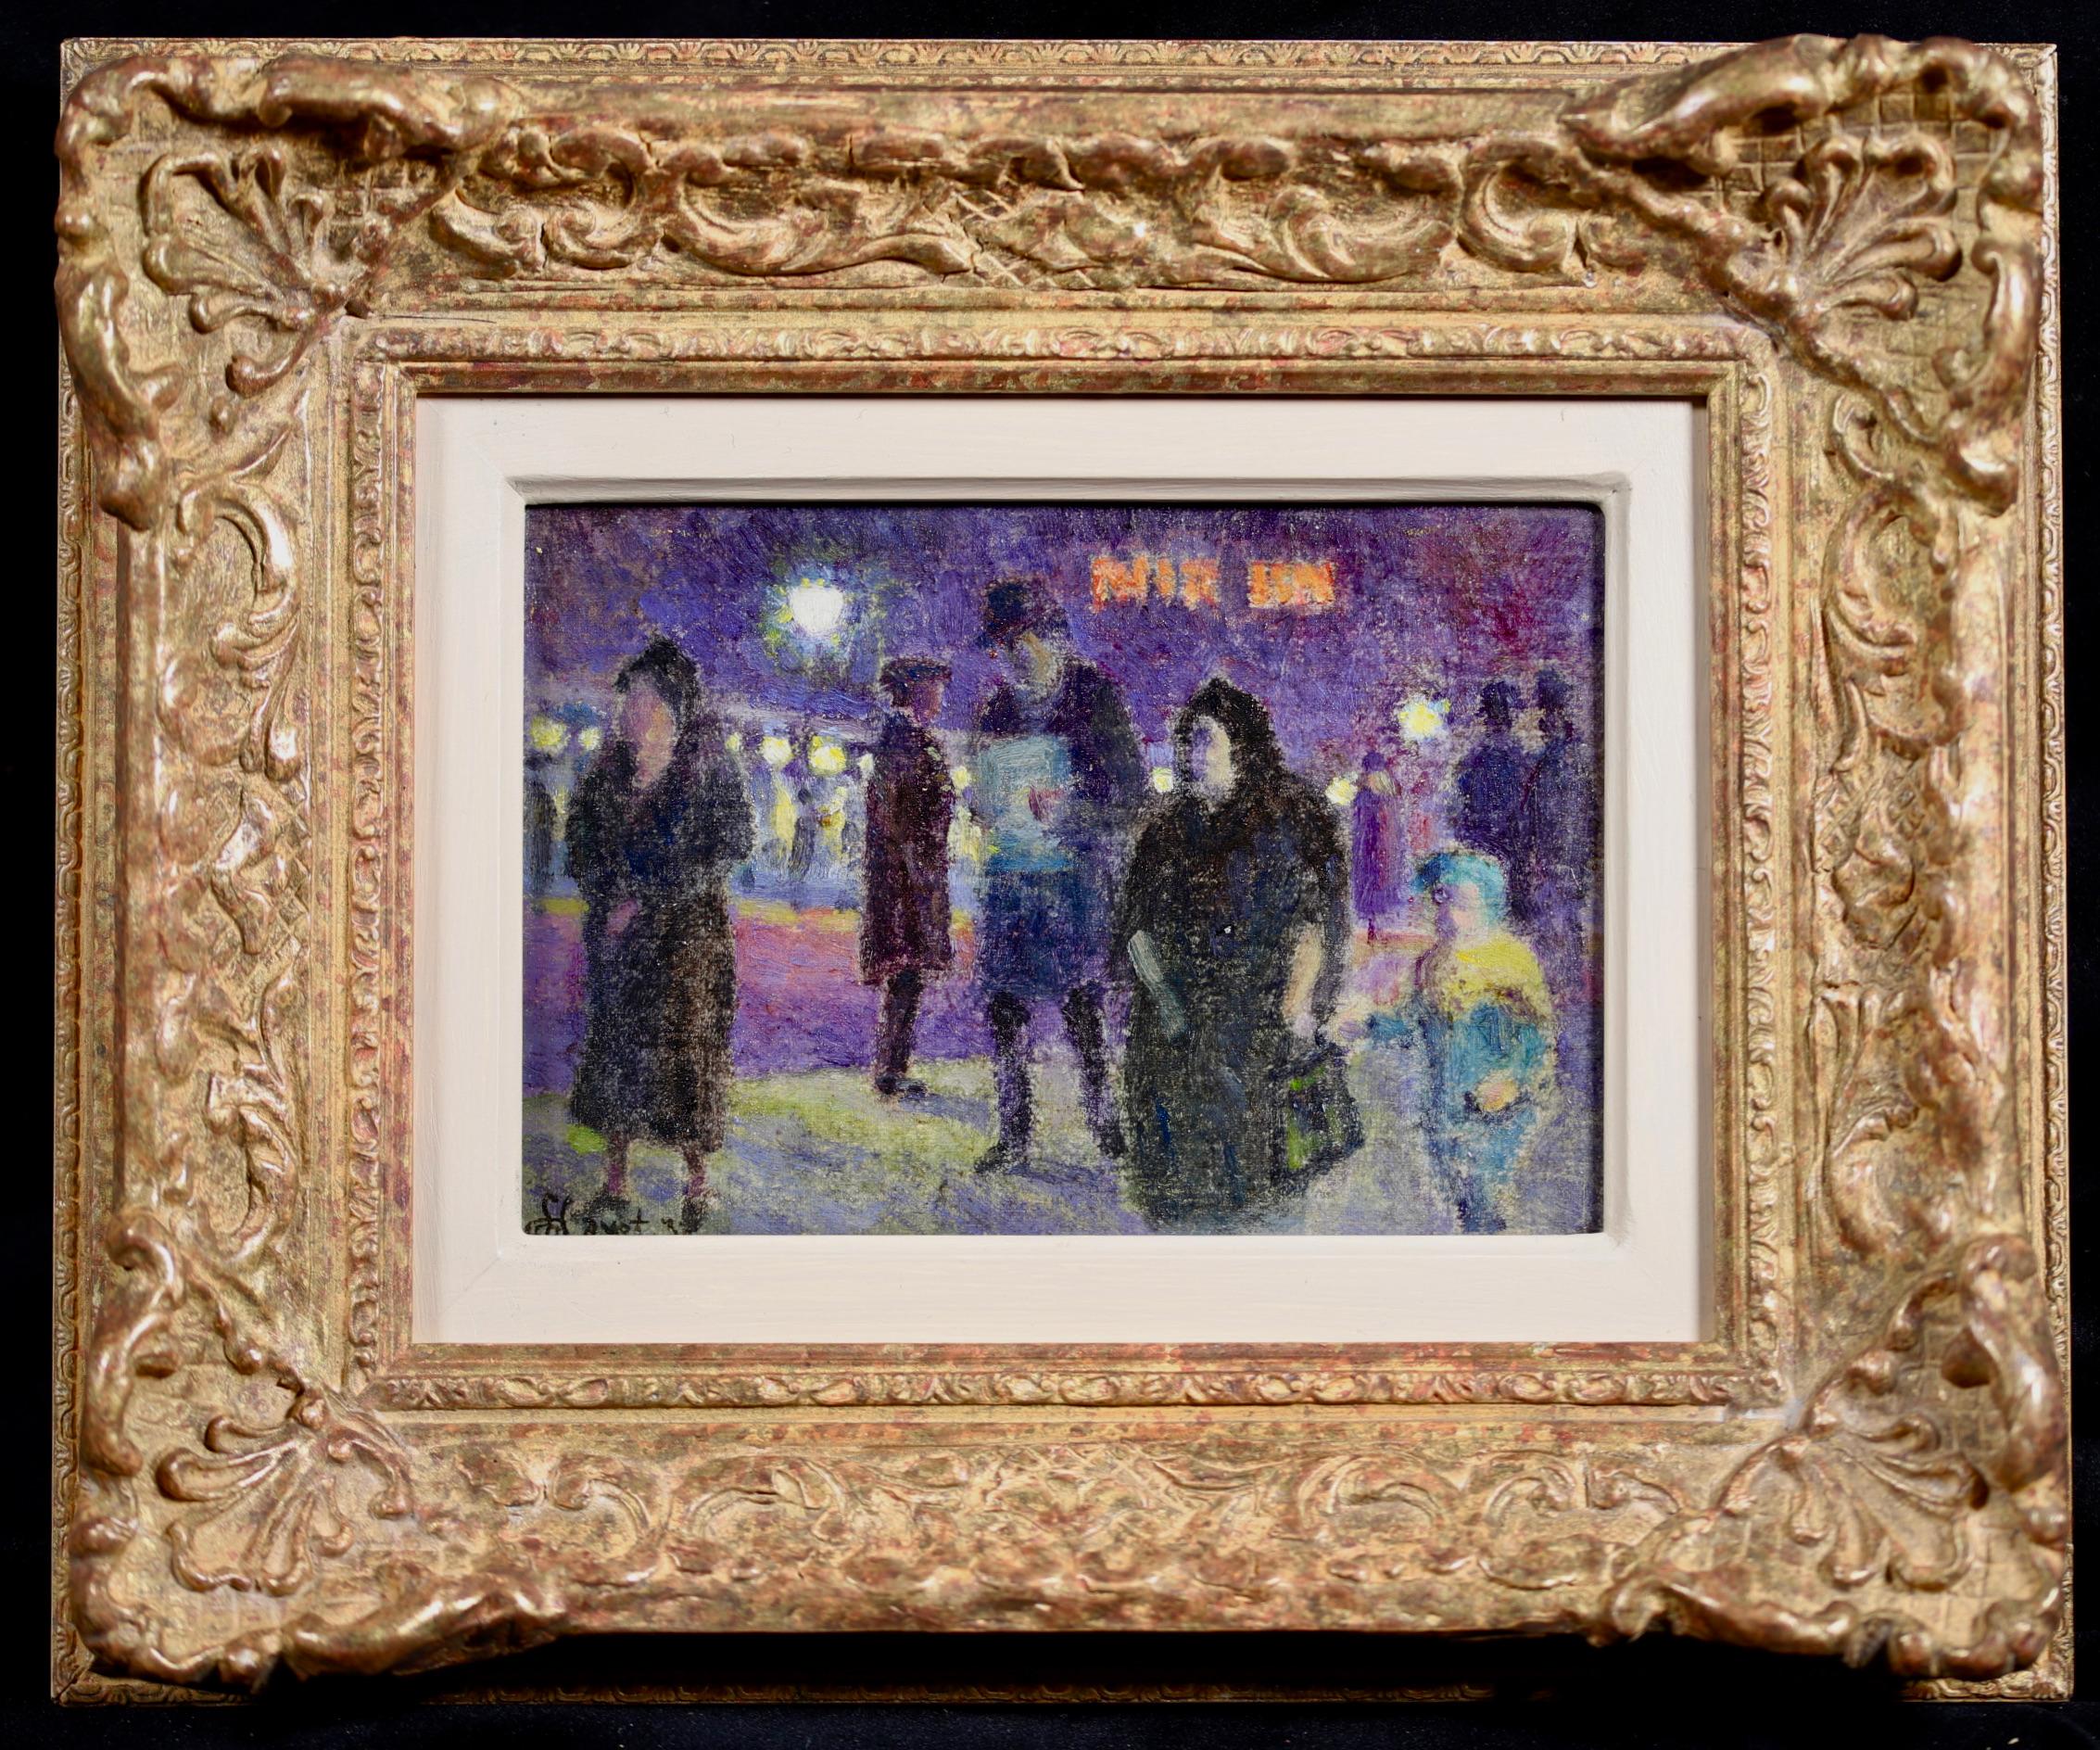 Ein wunderbares Öl auf Leinwand von Louis Hayet, das Figuren in einer abendlichen Stadtlandschaft zeigt. Signiert und datiert 1932 unten links. 

Louis Hayet hatte eine schwierige Kindheit, die durch die Instabilität seines Vaters, eines